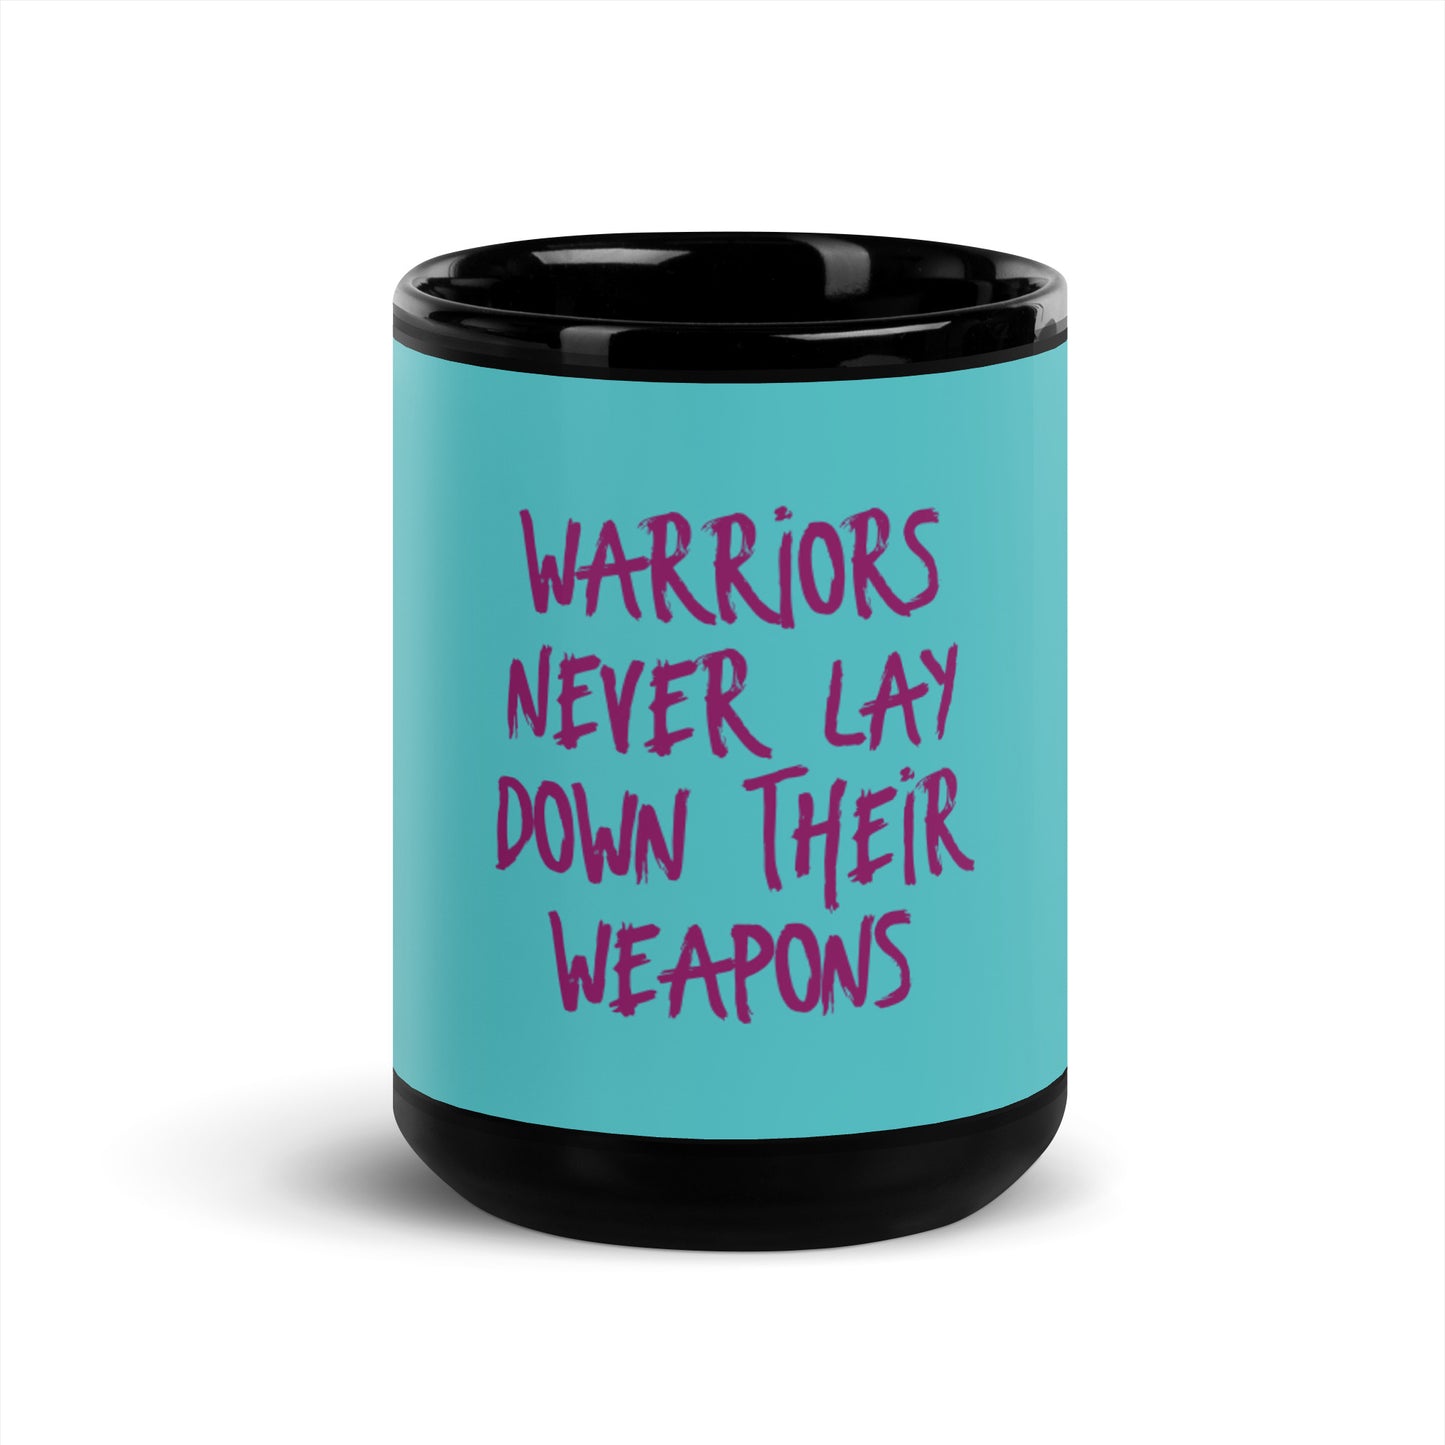 Teal Black Glossy Mug - Les guerriers ne déposent jamais leurs armes